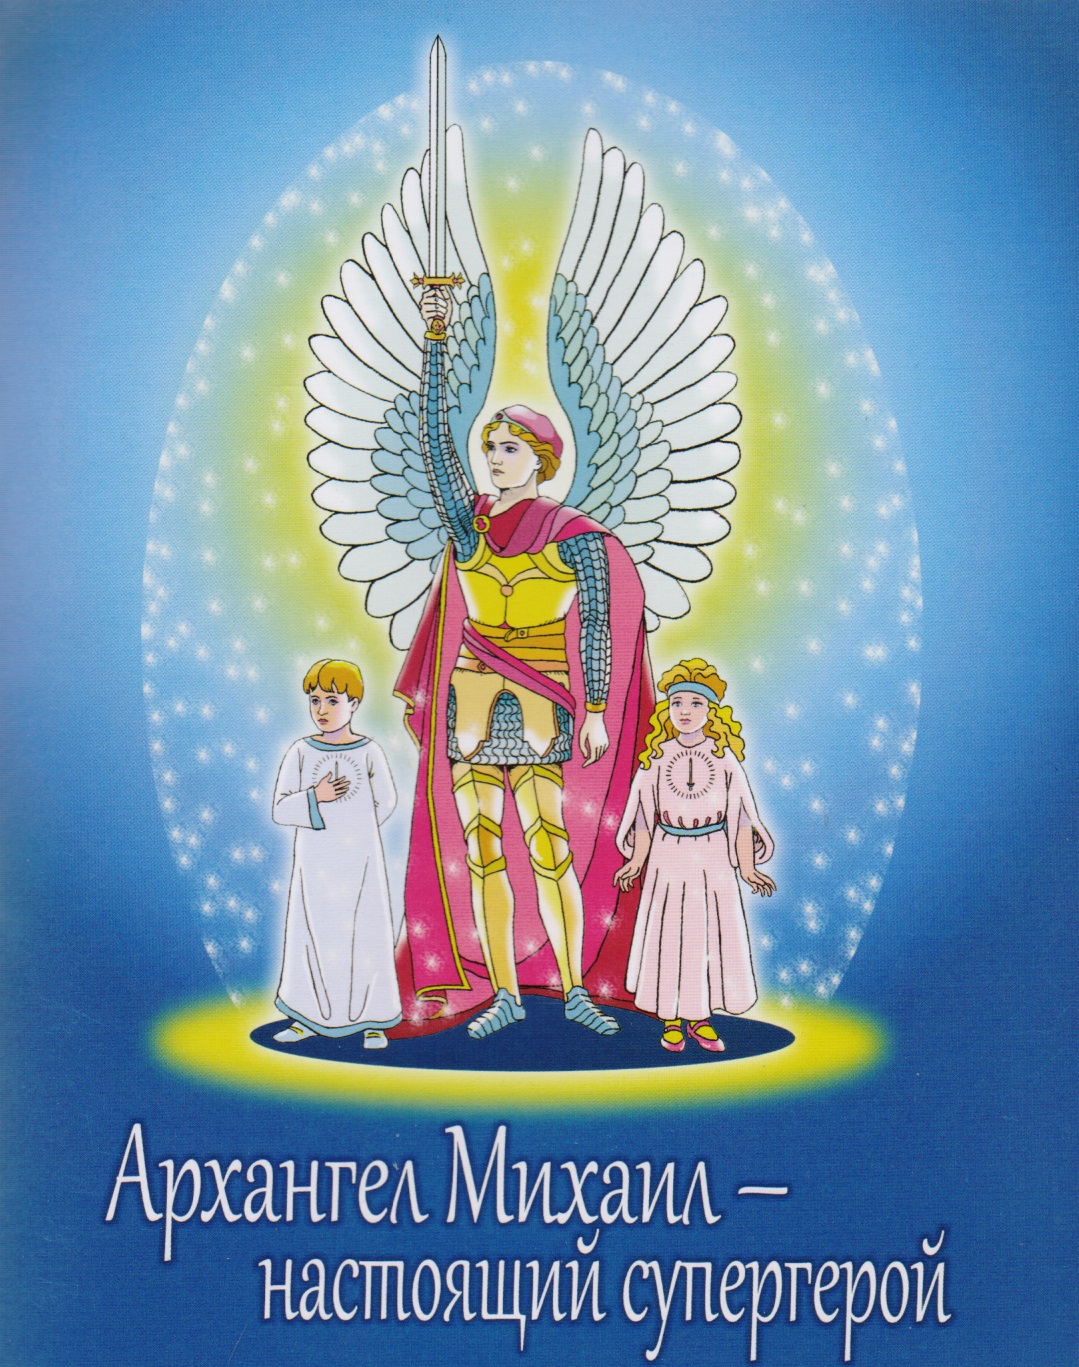 ашумов михаил ненужный ангел Архангел Михаил - настоящий супергерой